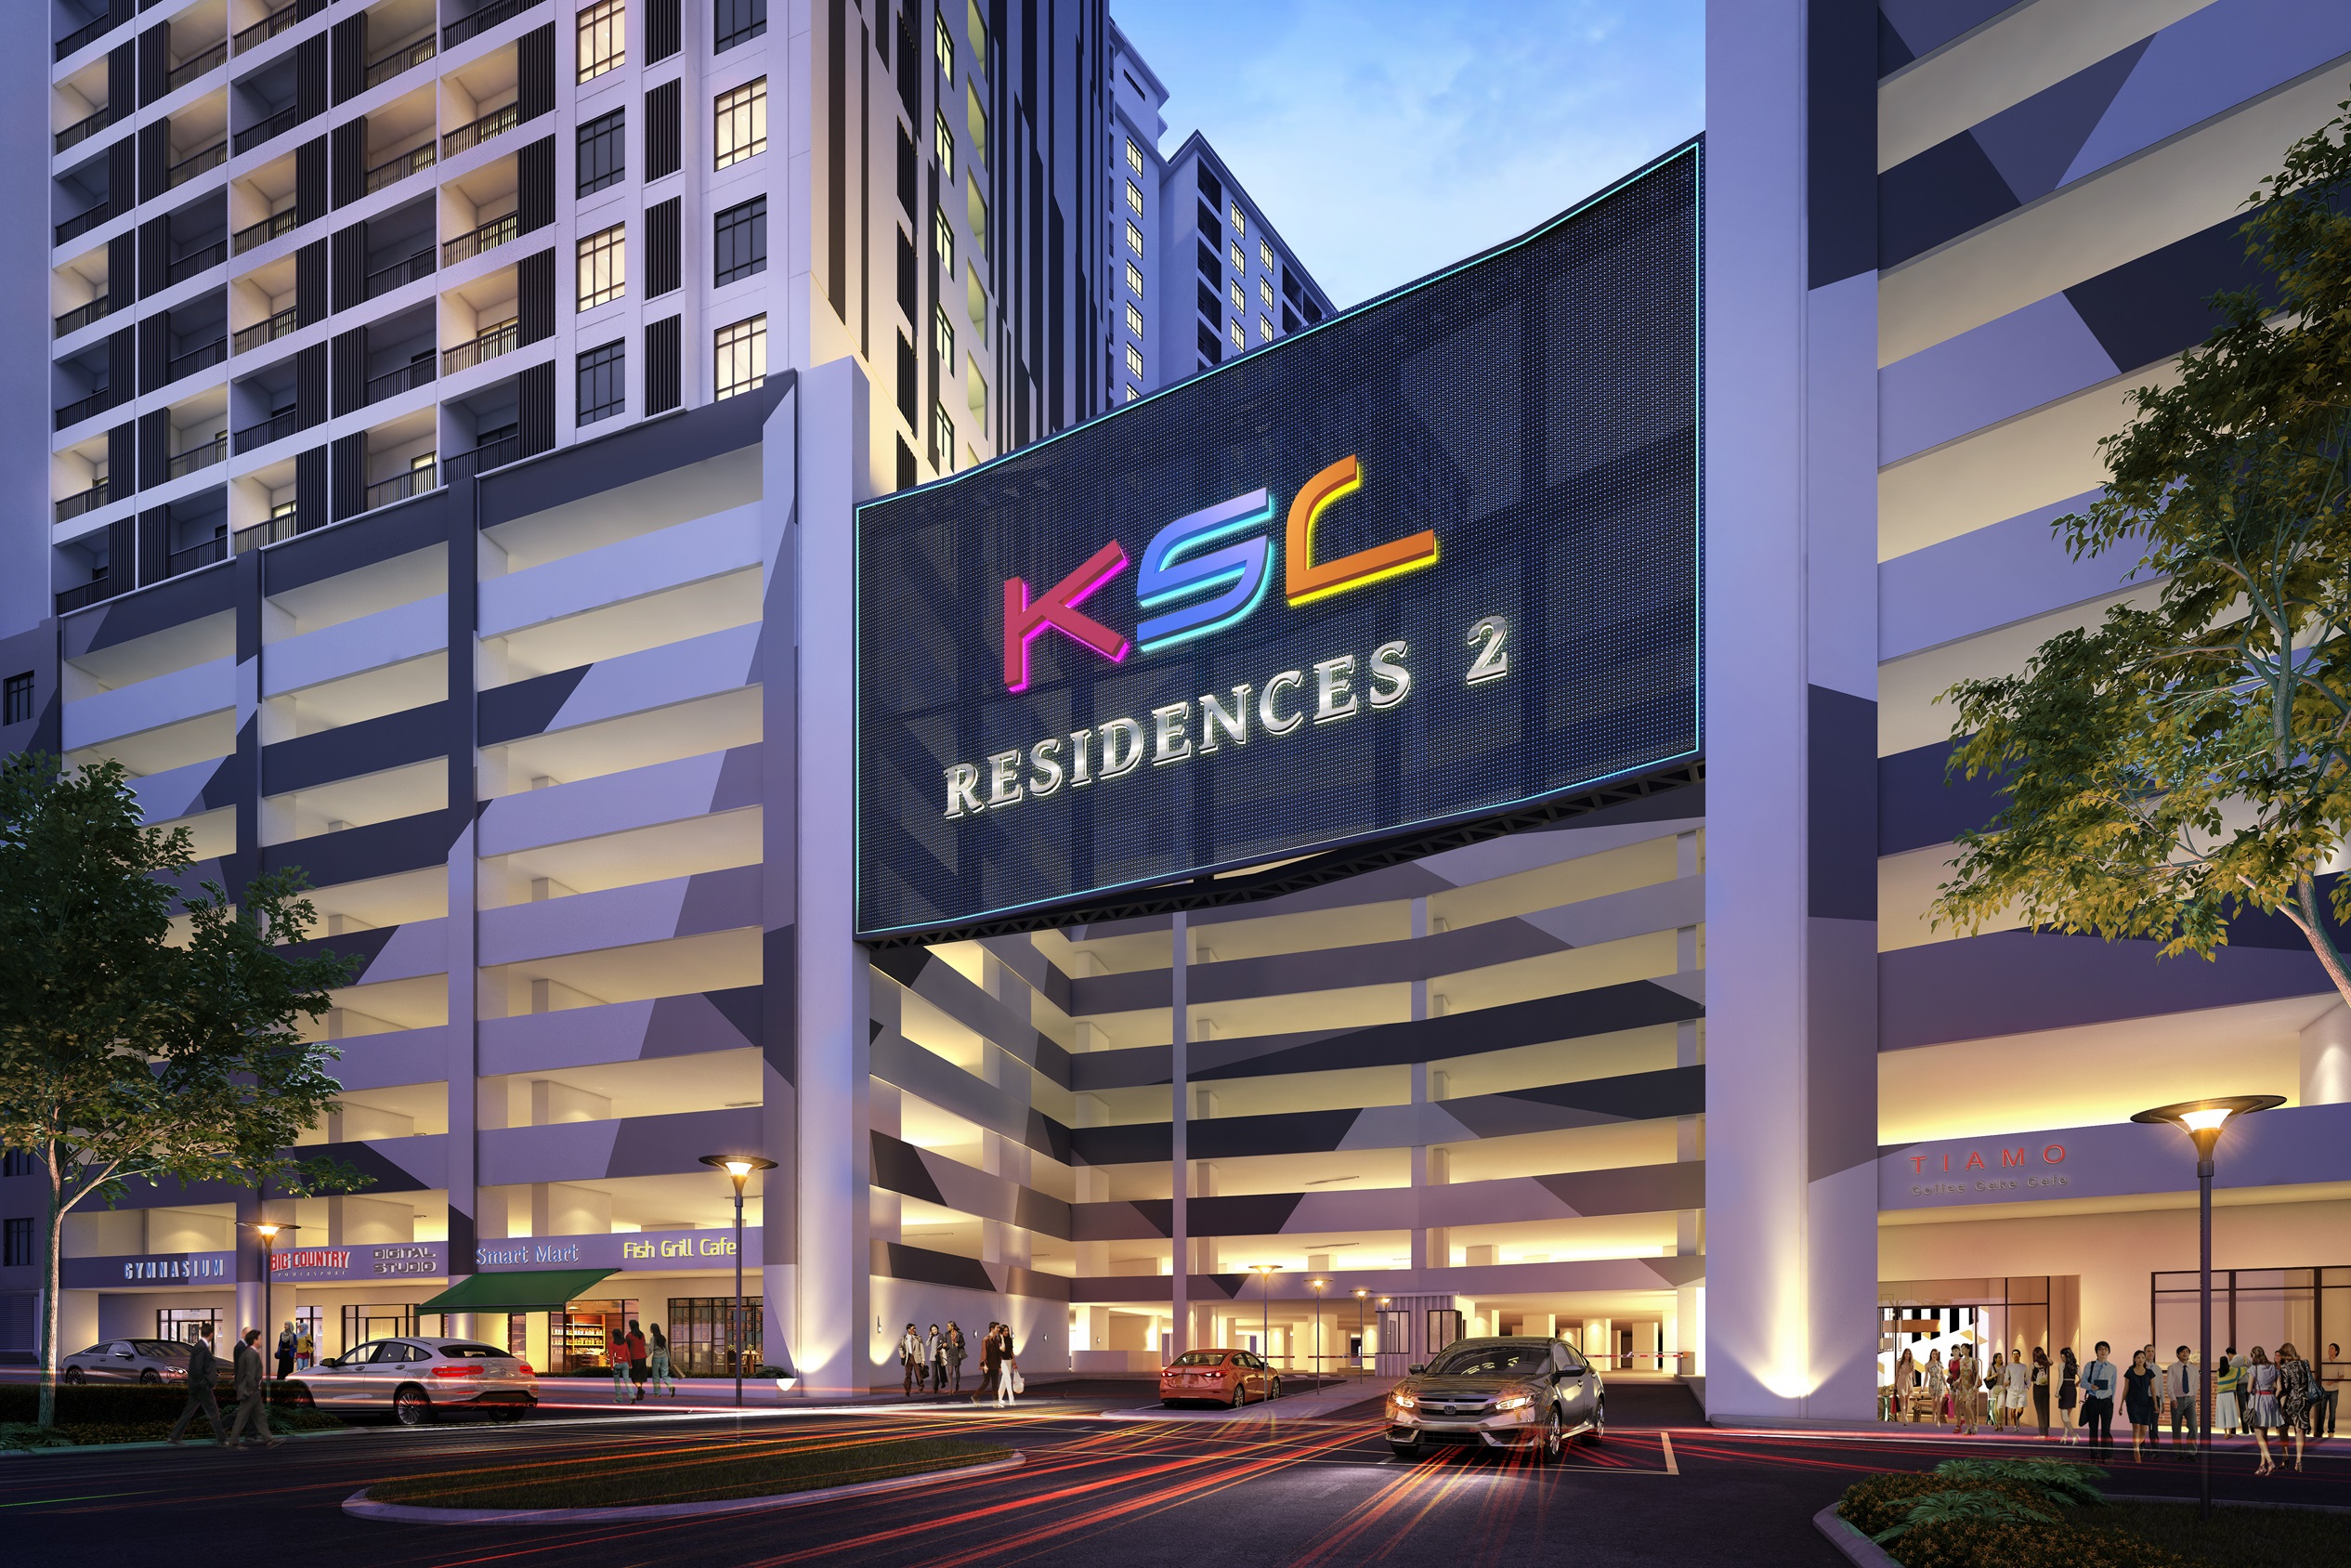 KSL Residences 2 @ Kangkar Tebrau